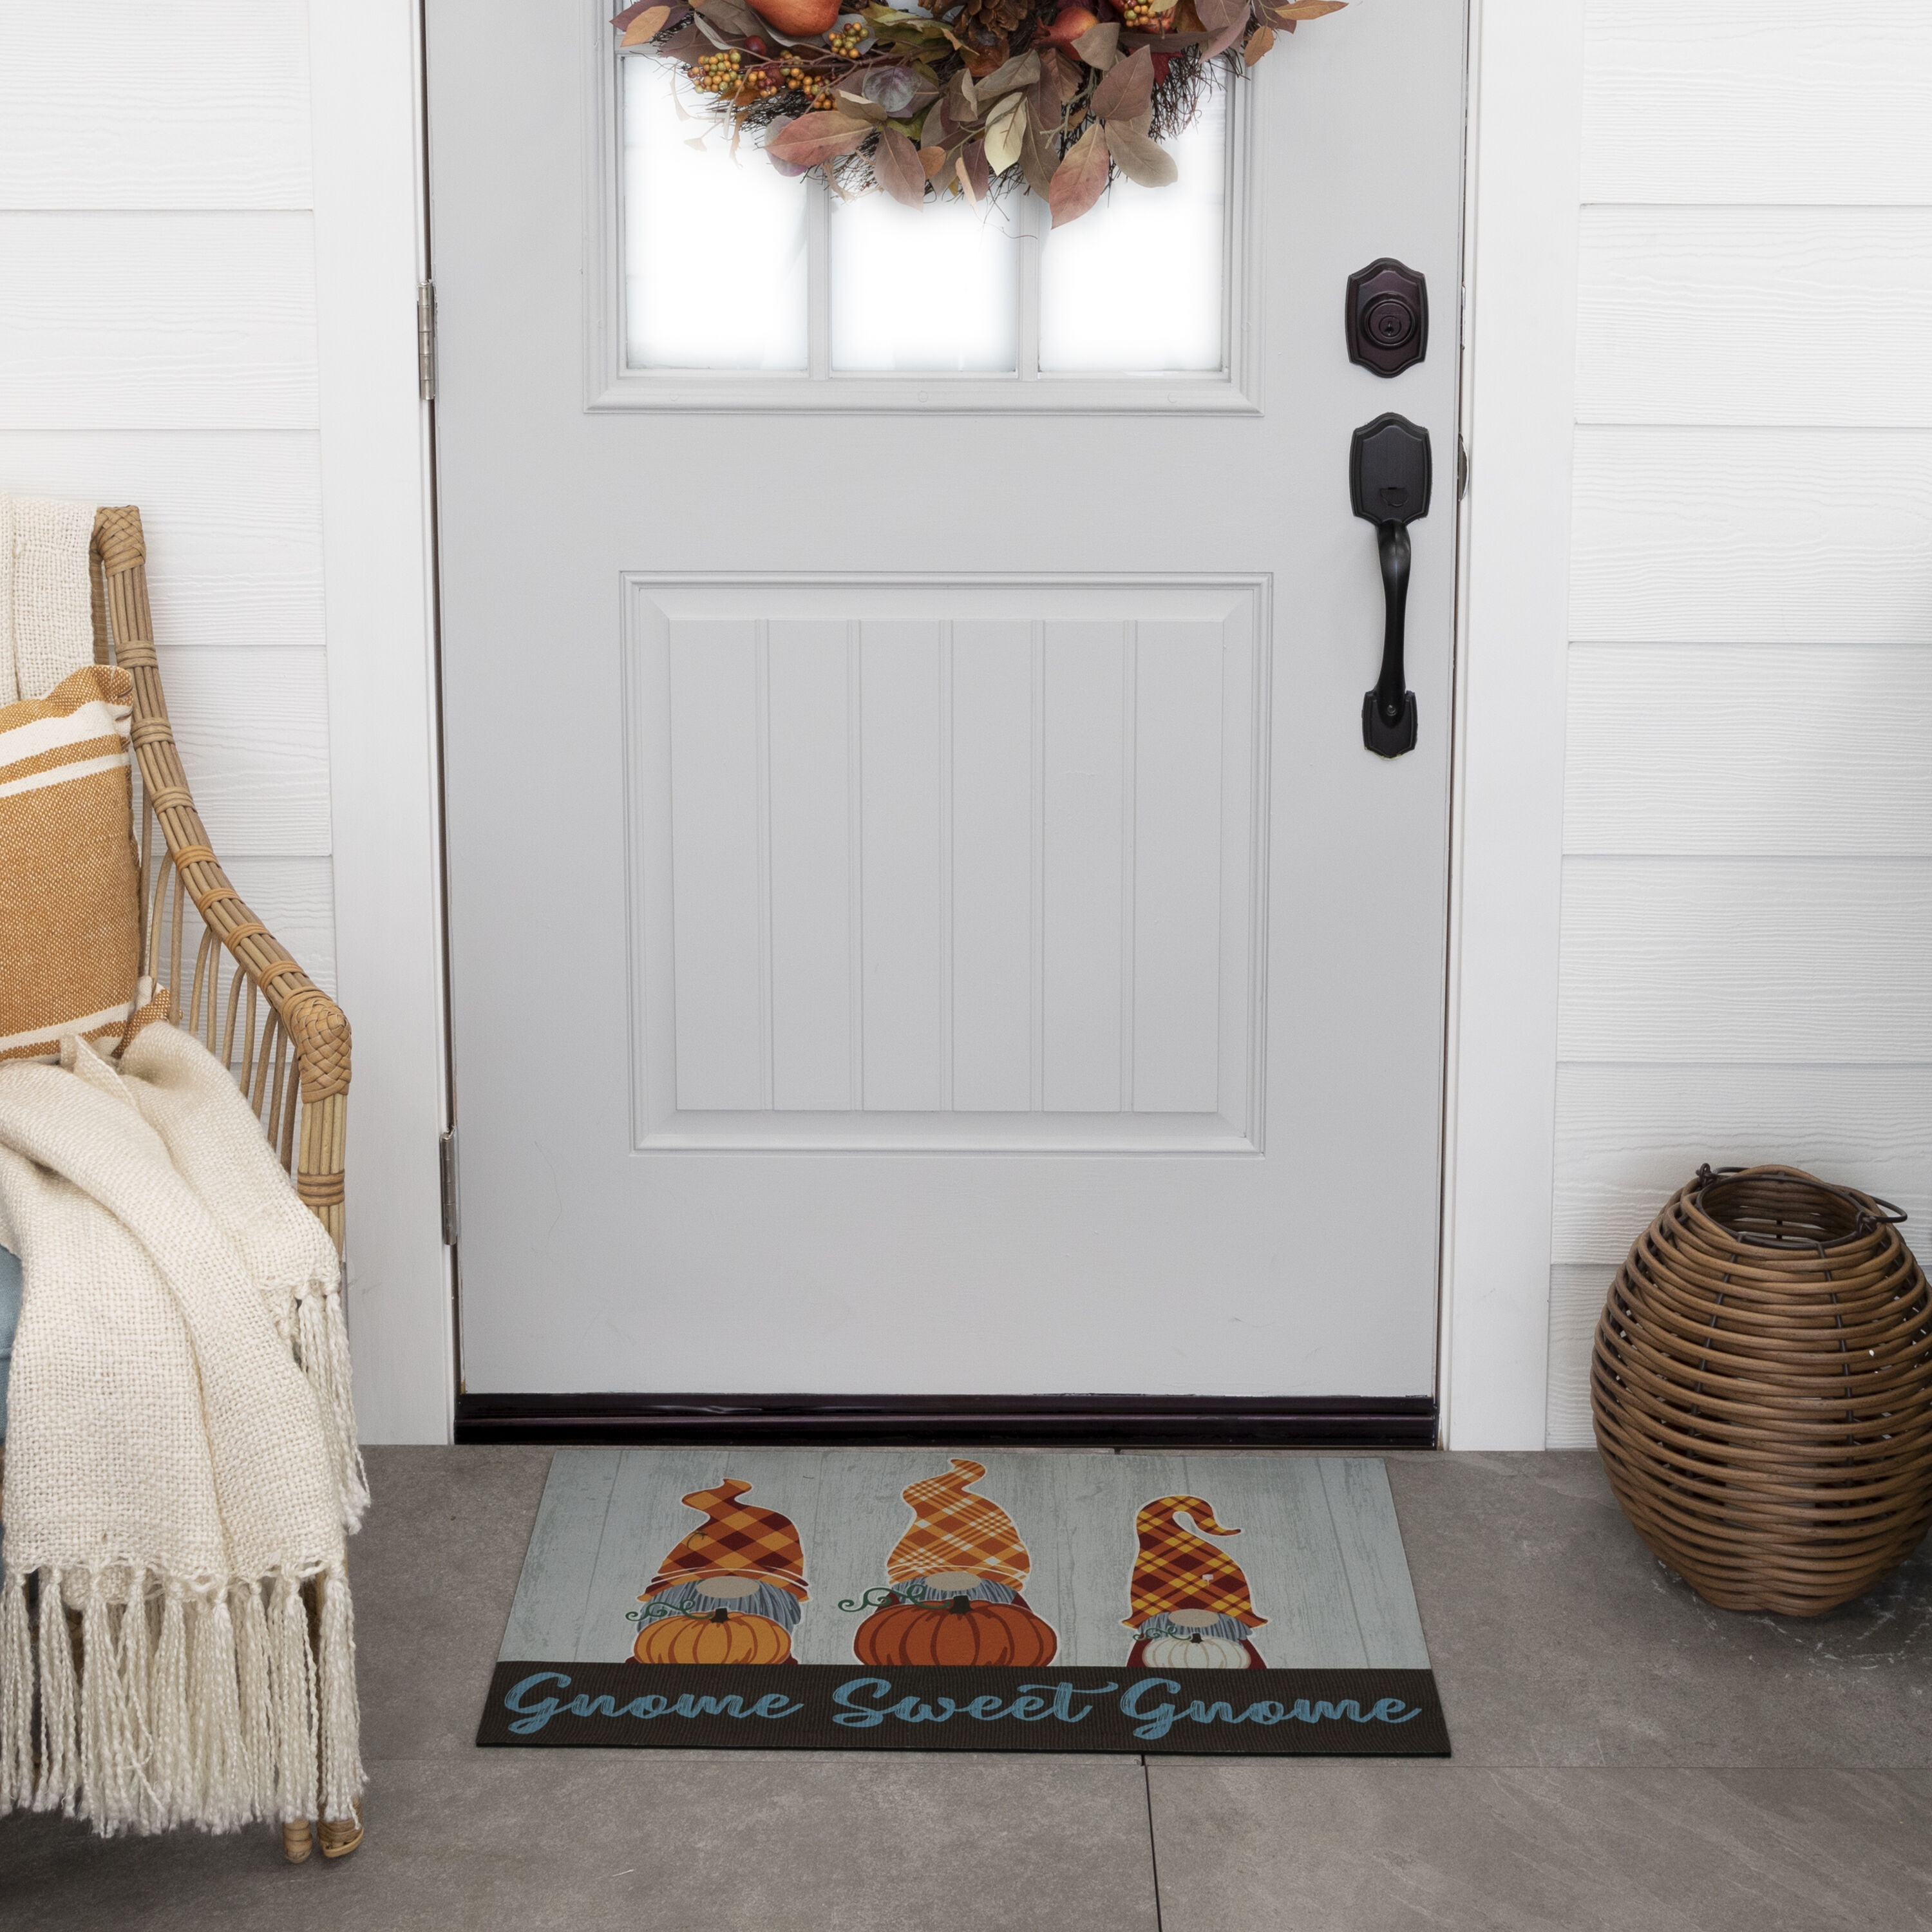 Go Away Doormat, Funny Front Door Welcome Mat for Outdoor Porch or Patio,  Natura